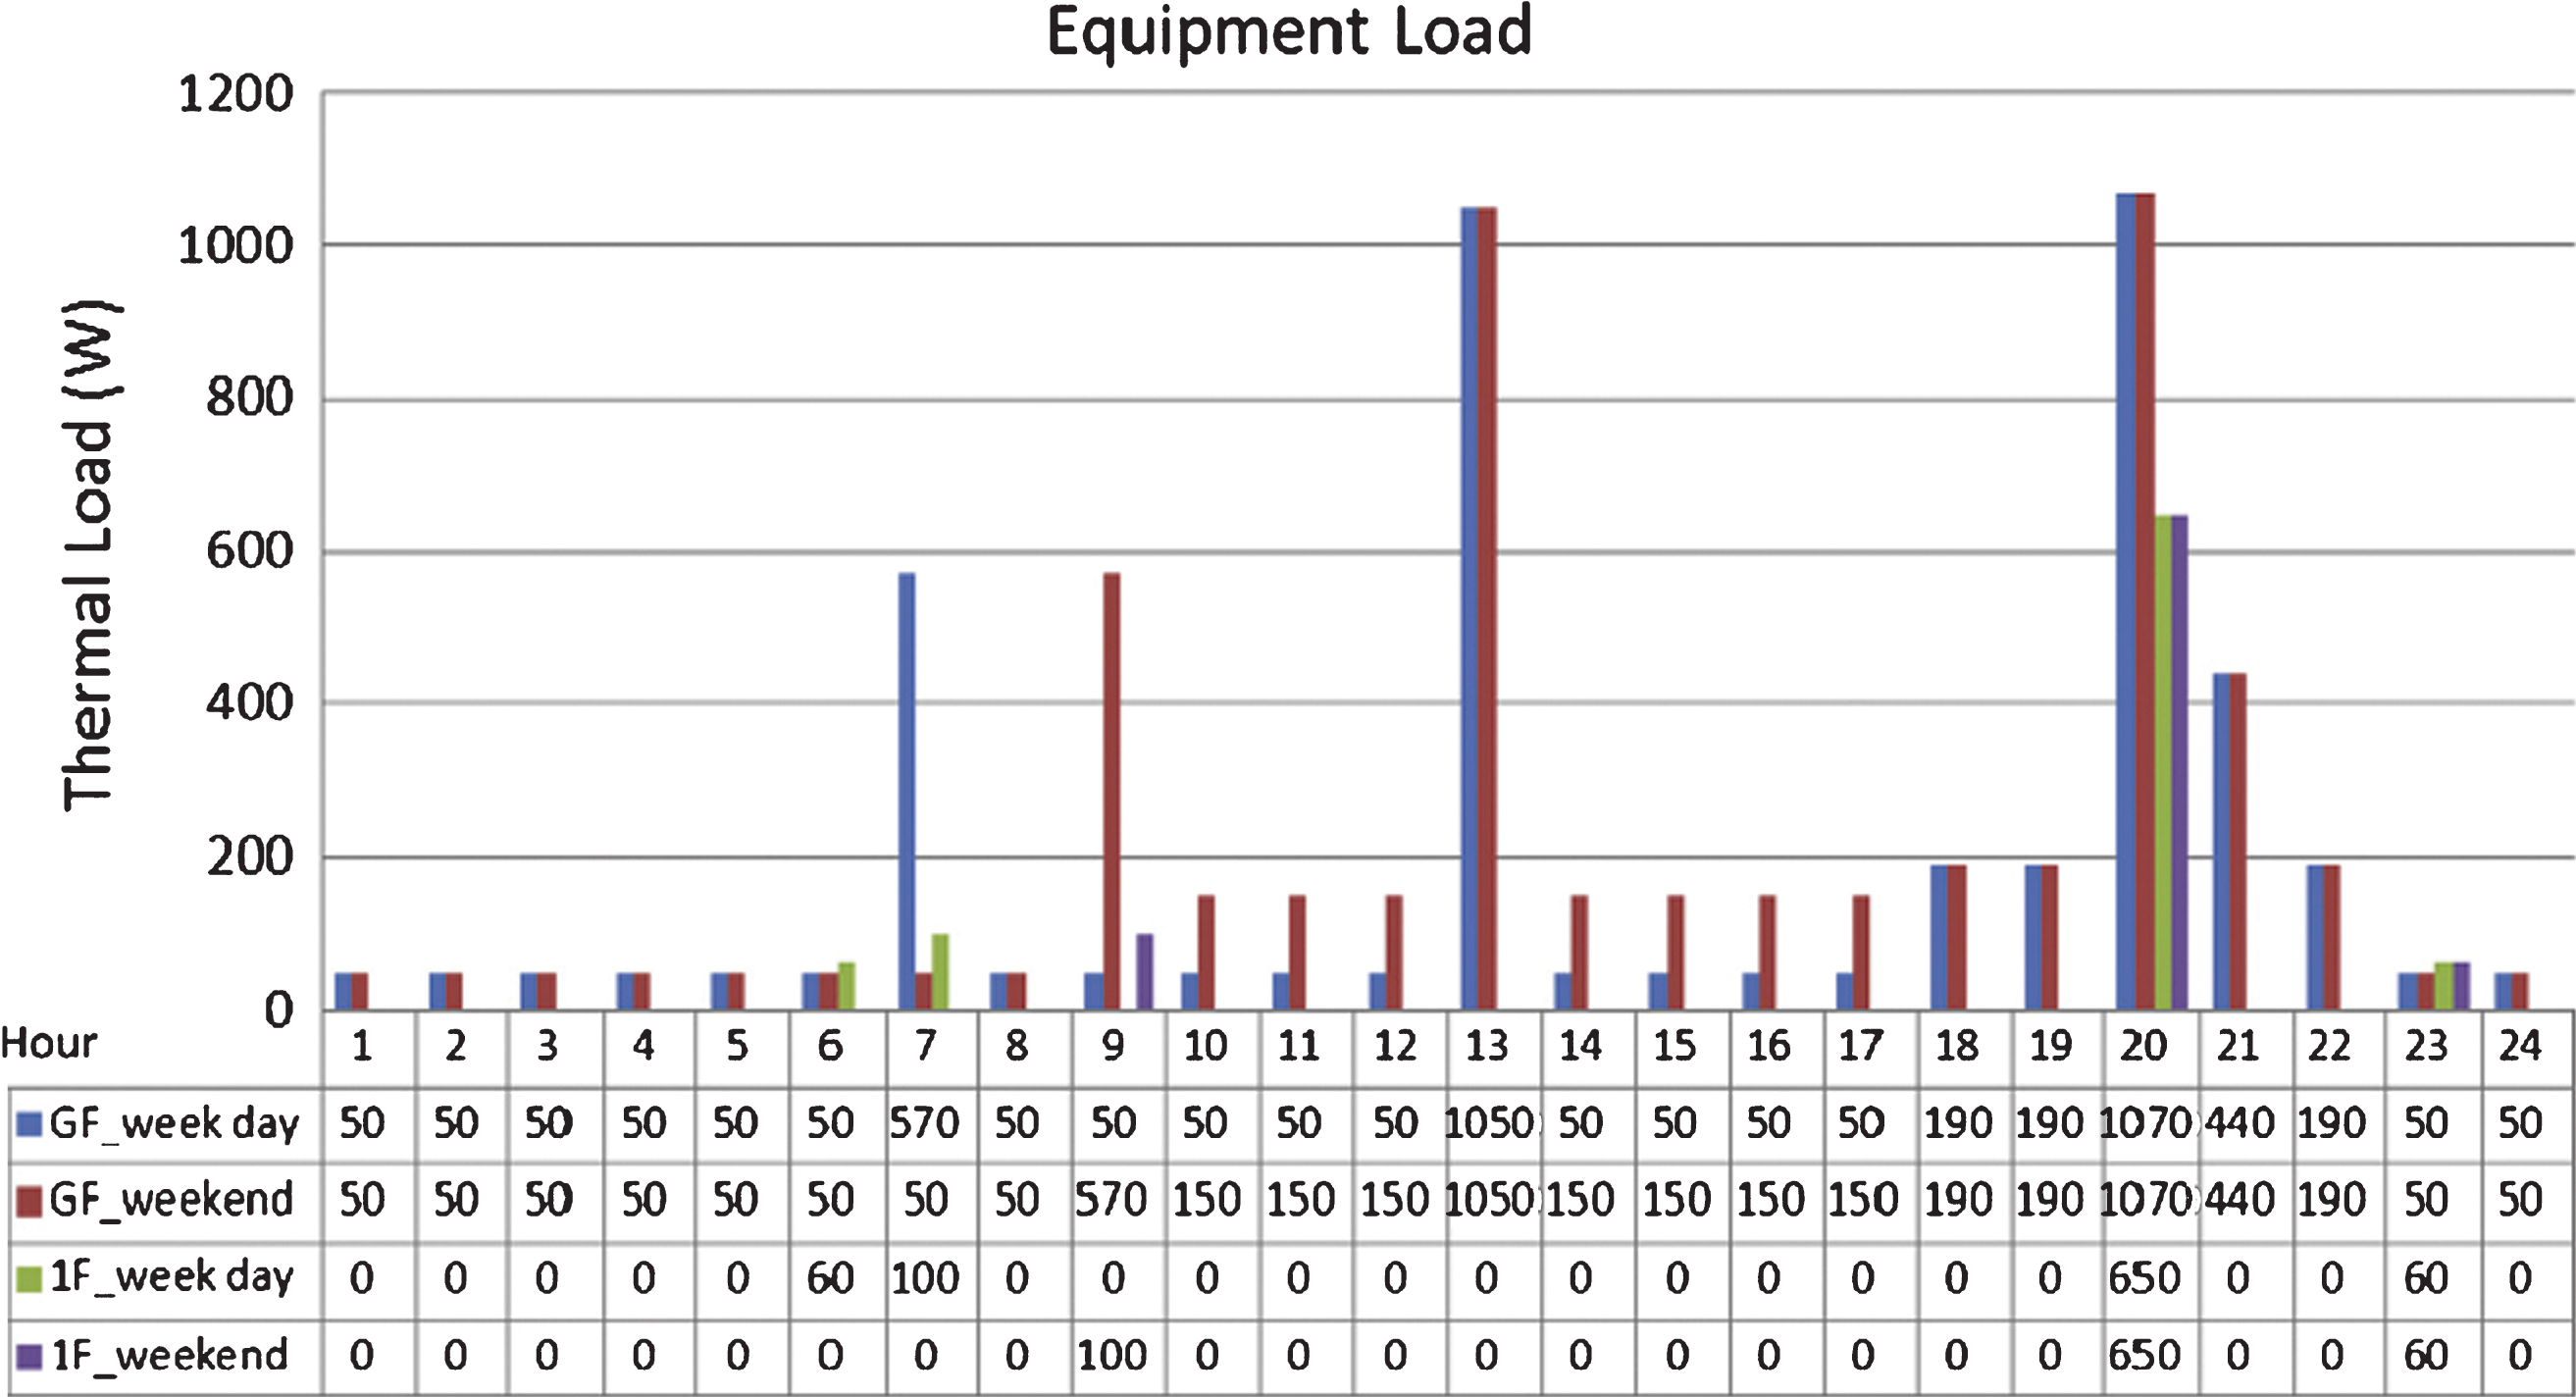 Equipment load scenario in the numerical model.